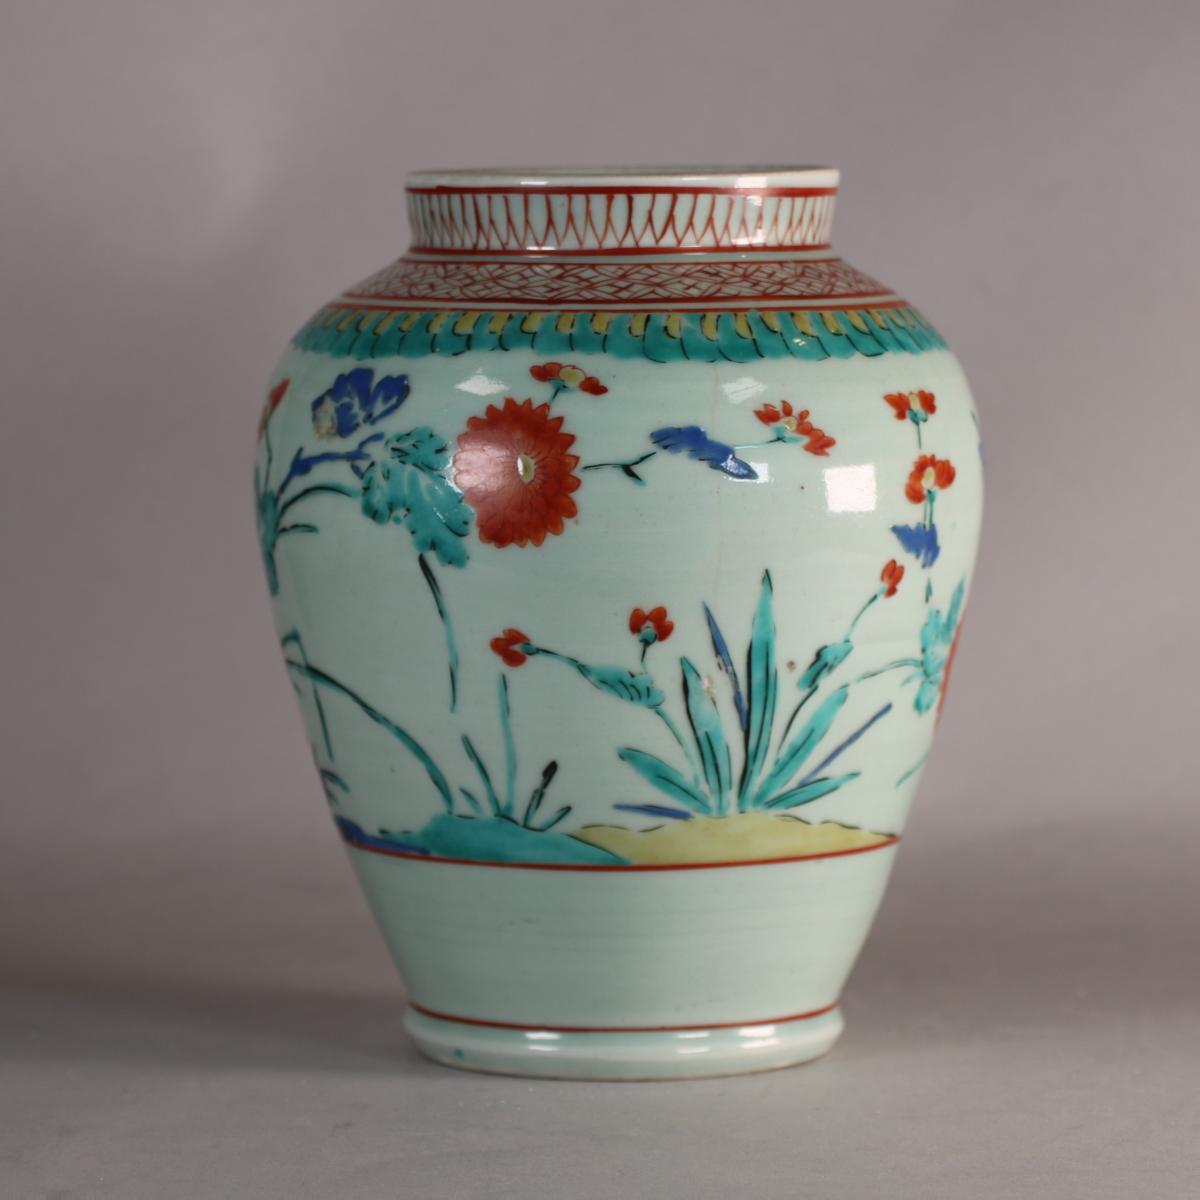 Japanese kakiemon style vase